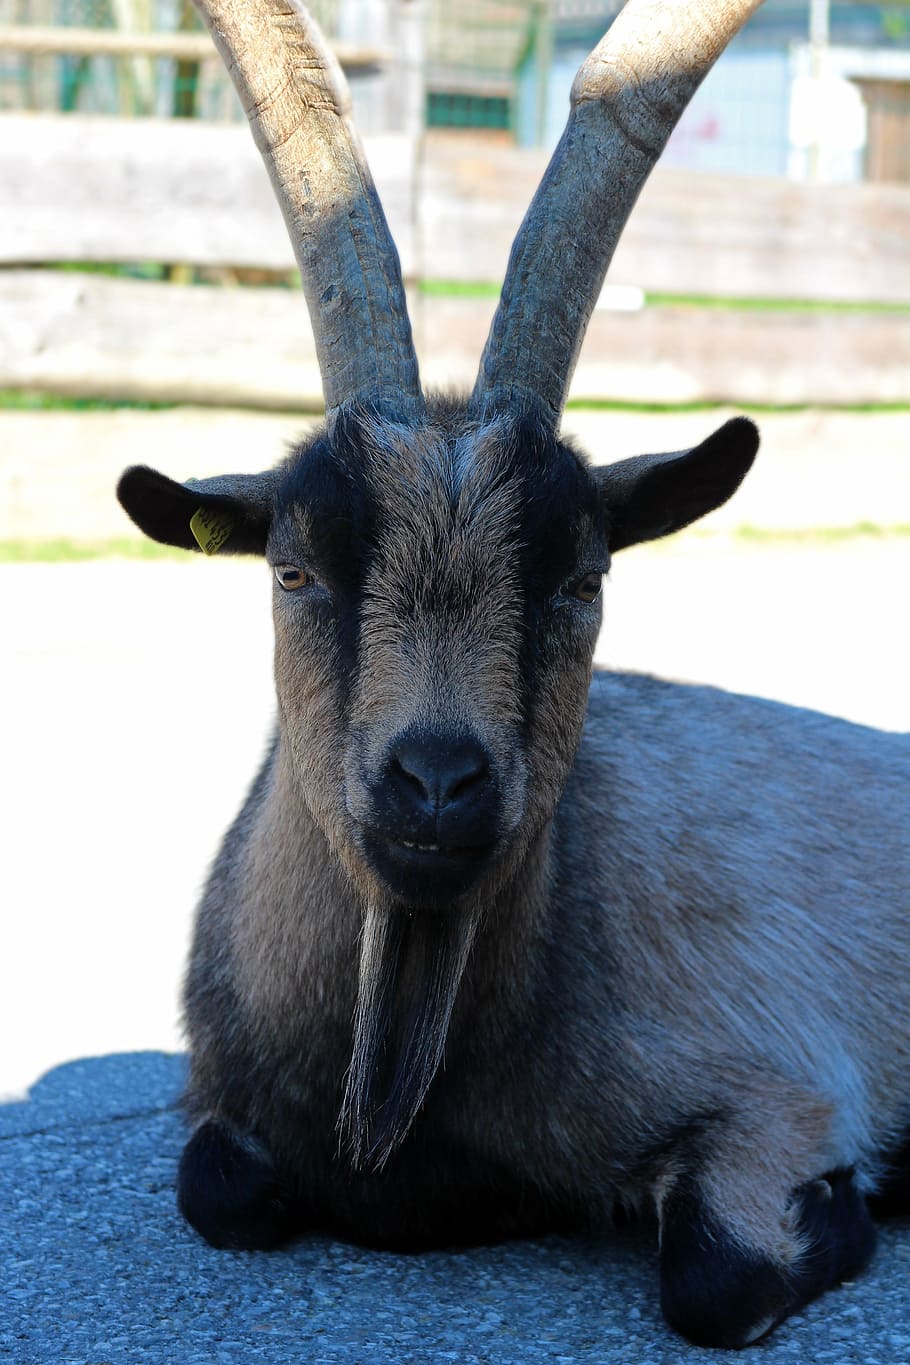 billy goat, goat, animal, horned, livestock, goatee, domestic goat, farm, horn, mammal